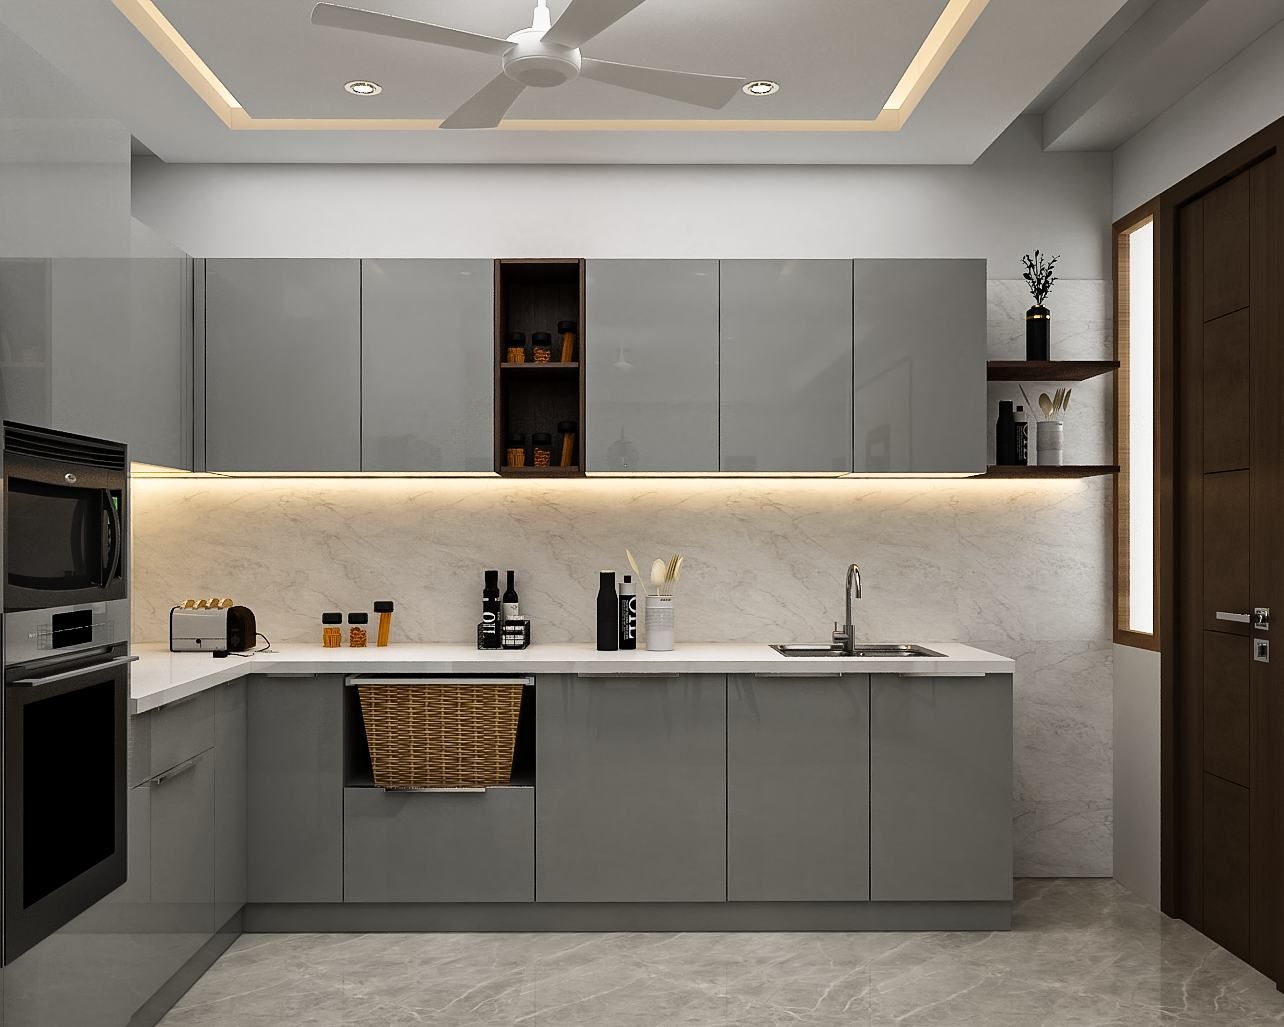 Modern Grey-Themed Open Kitchen Design With Kitchen Island